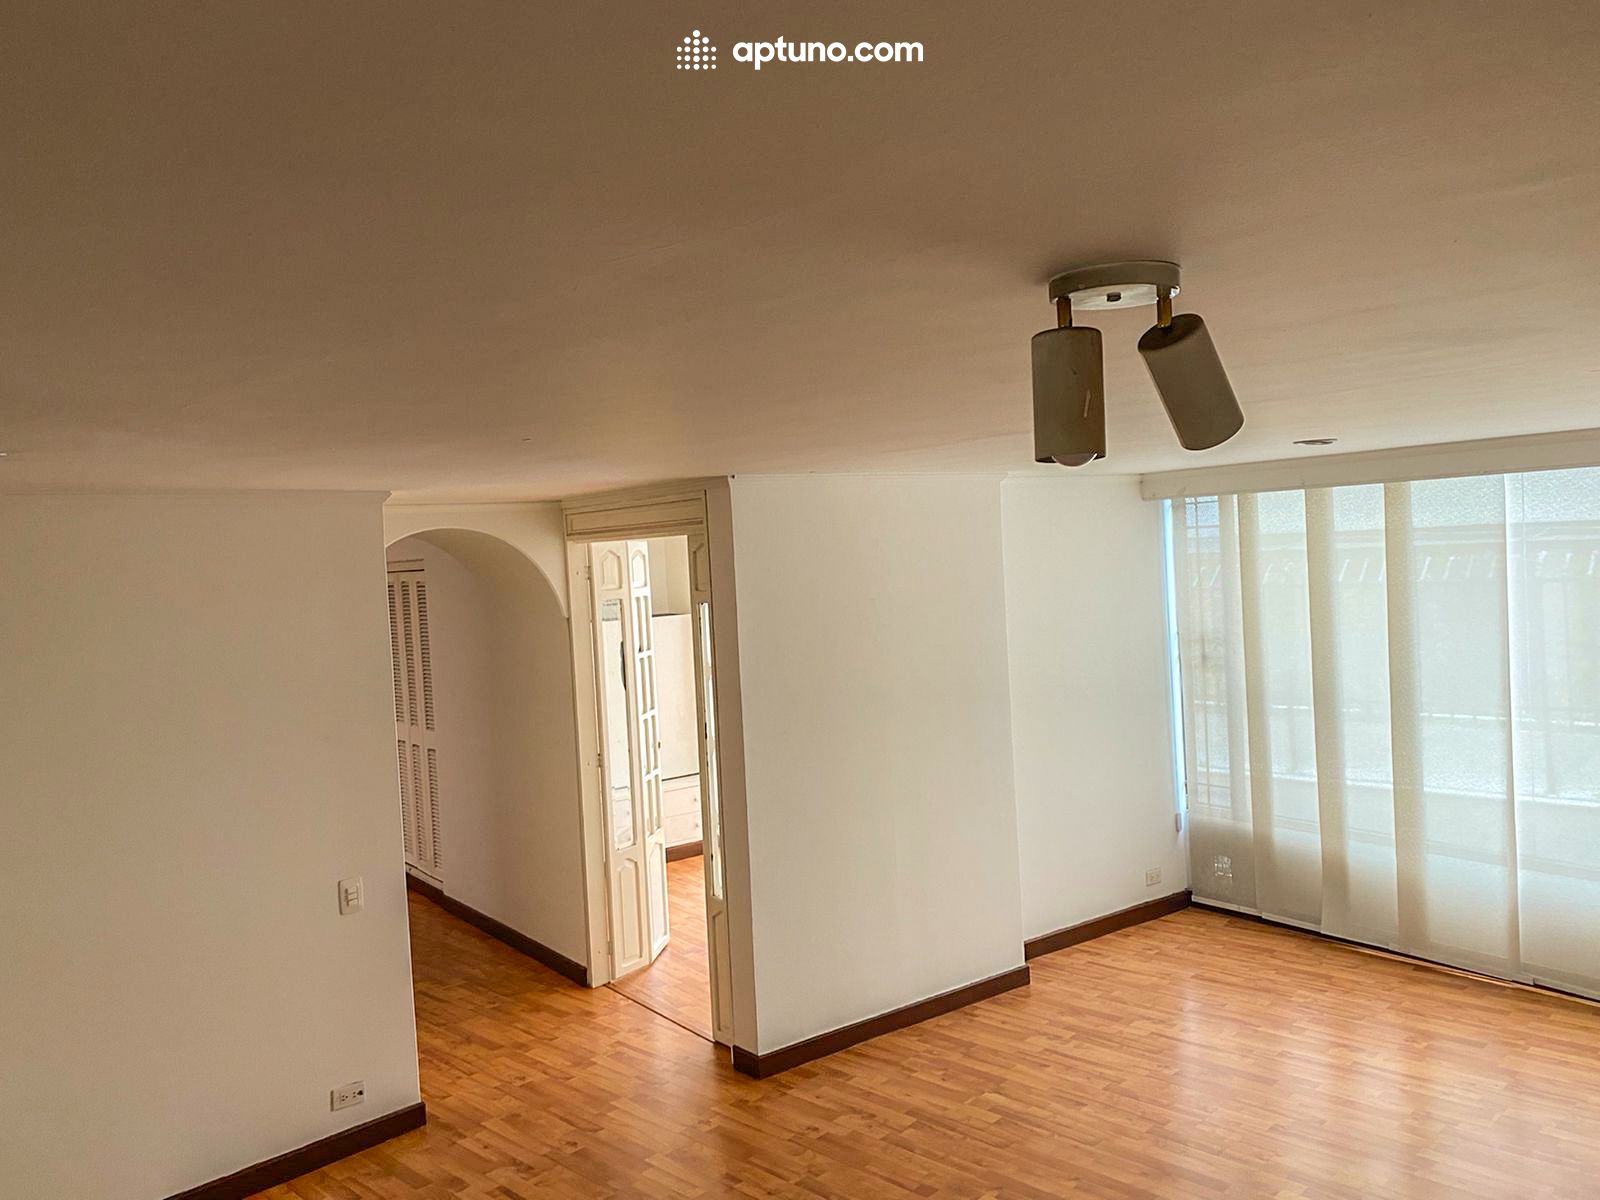 Apartamento en arriendo Santa Bárbara Central 90 m² - $ 3.000.000,00